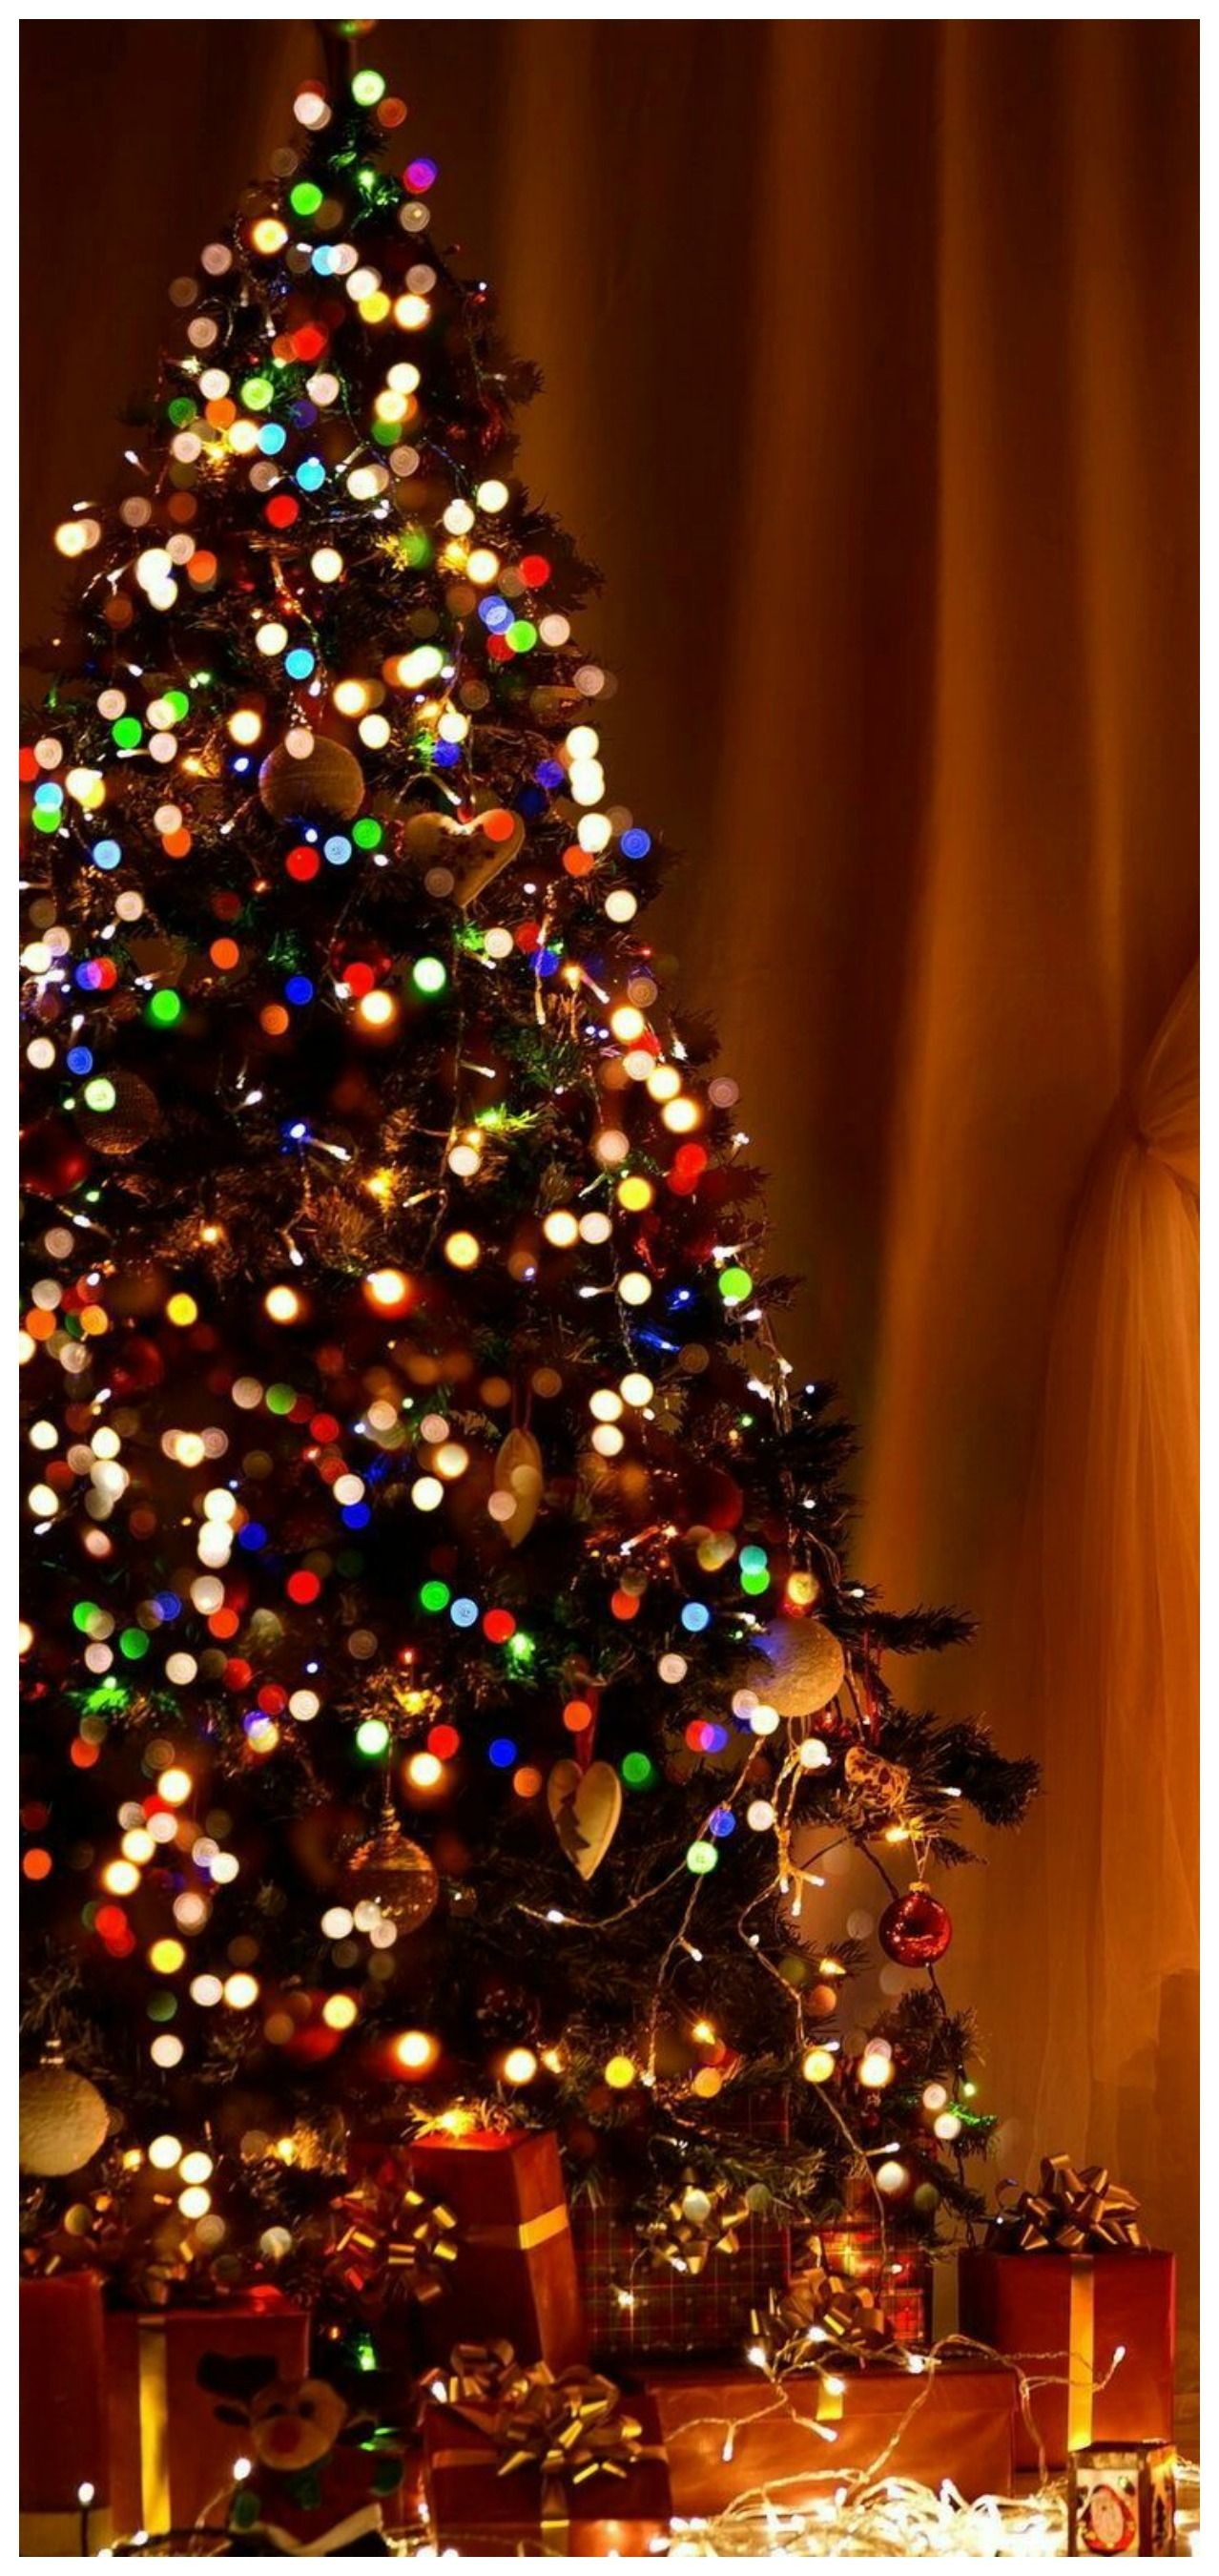 navidad fondos de pantalla tumblr,árbol de navidad,decoración navideña,árbol,decoración navideña,navidad